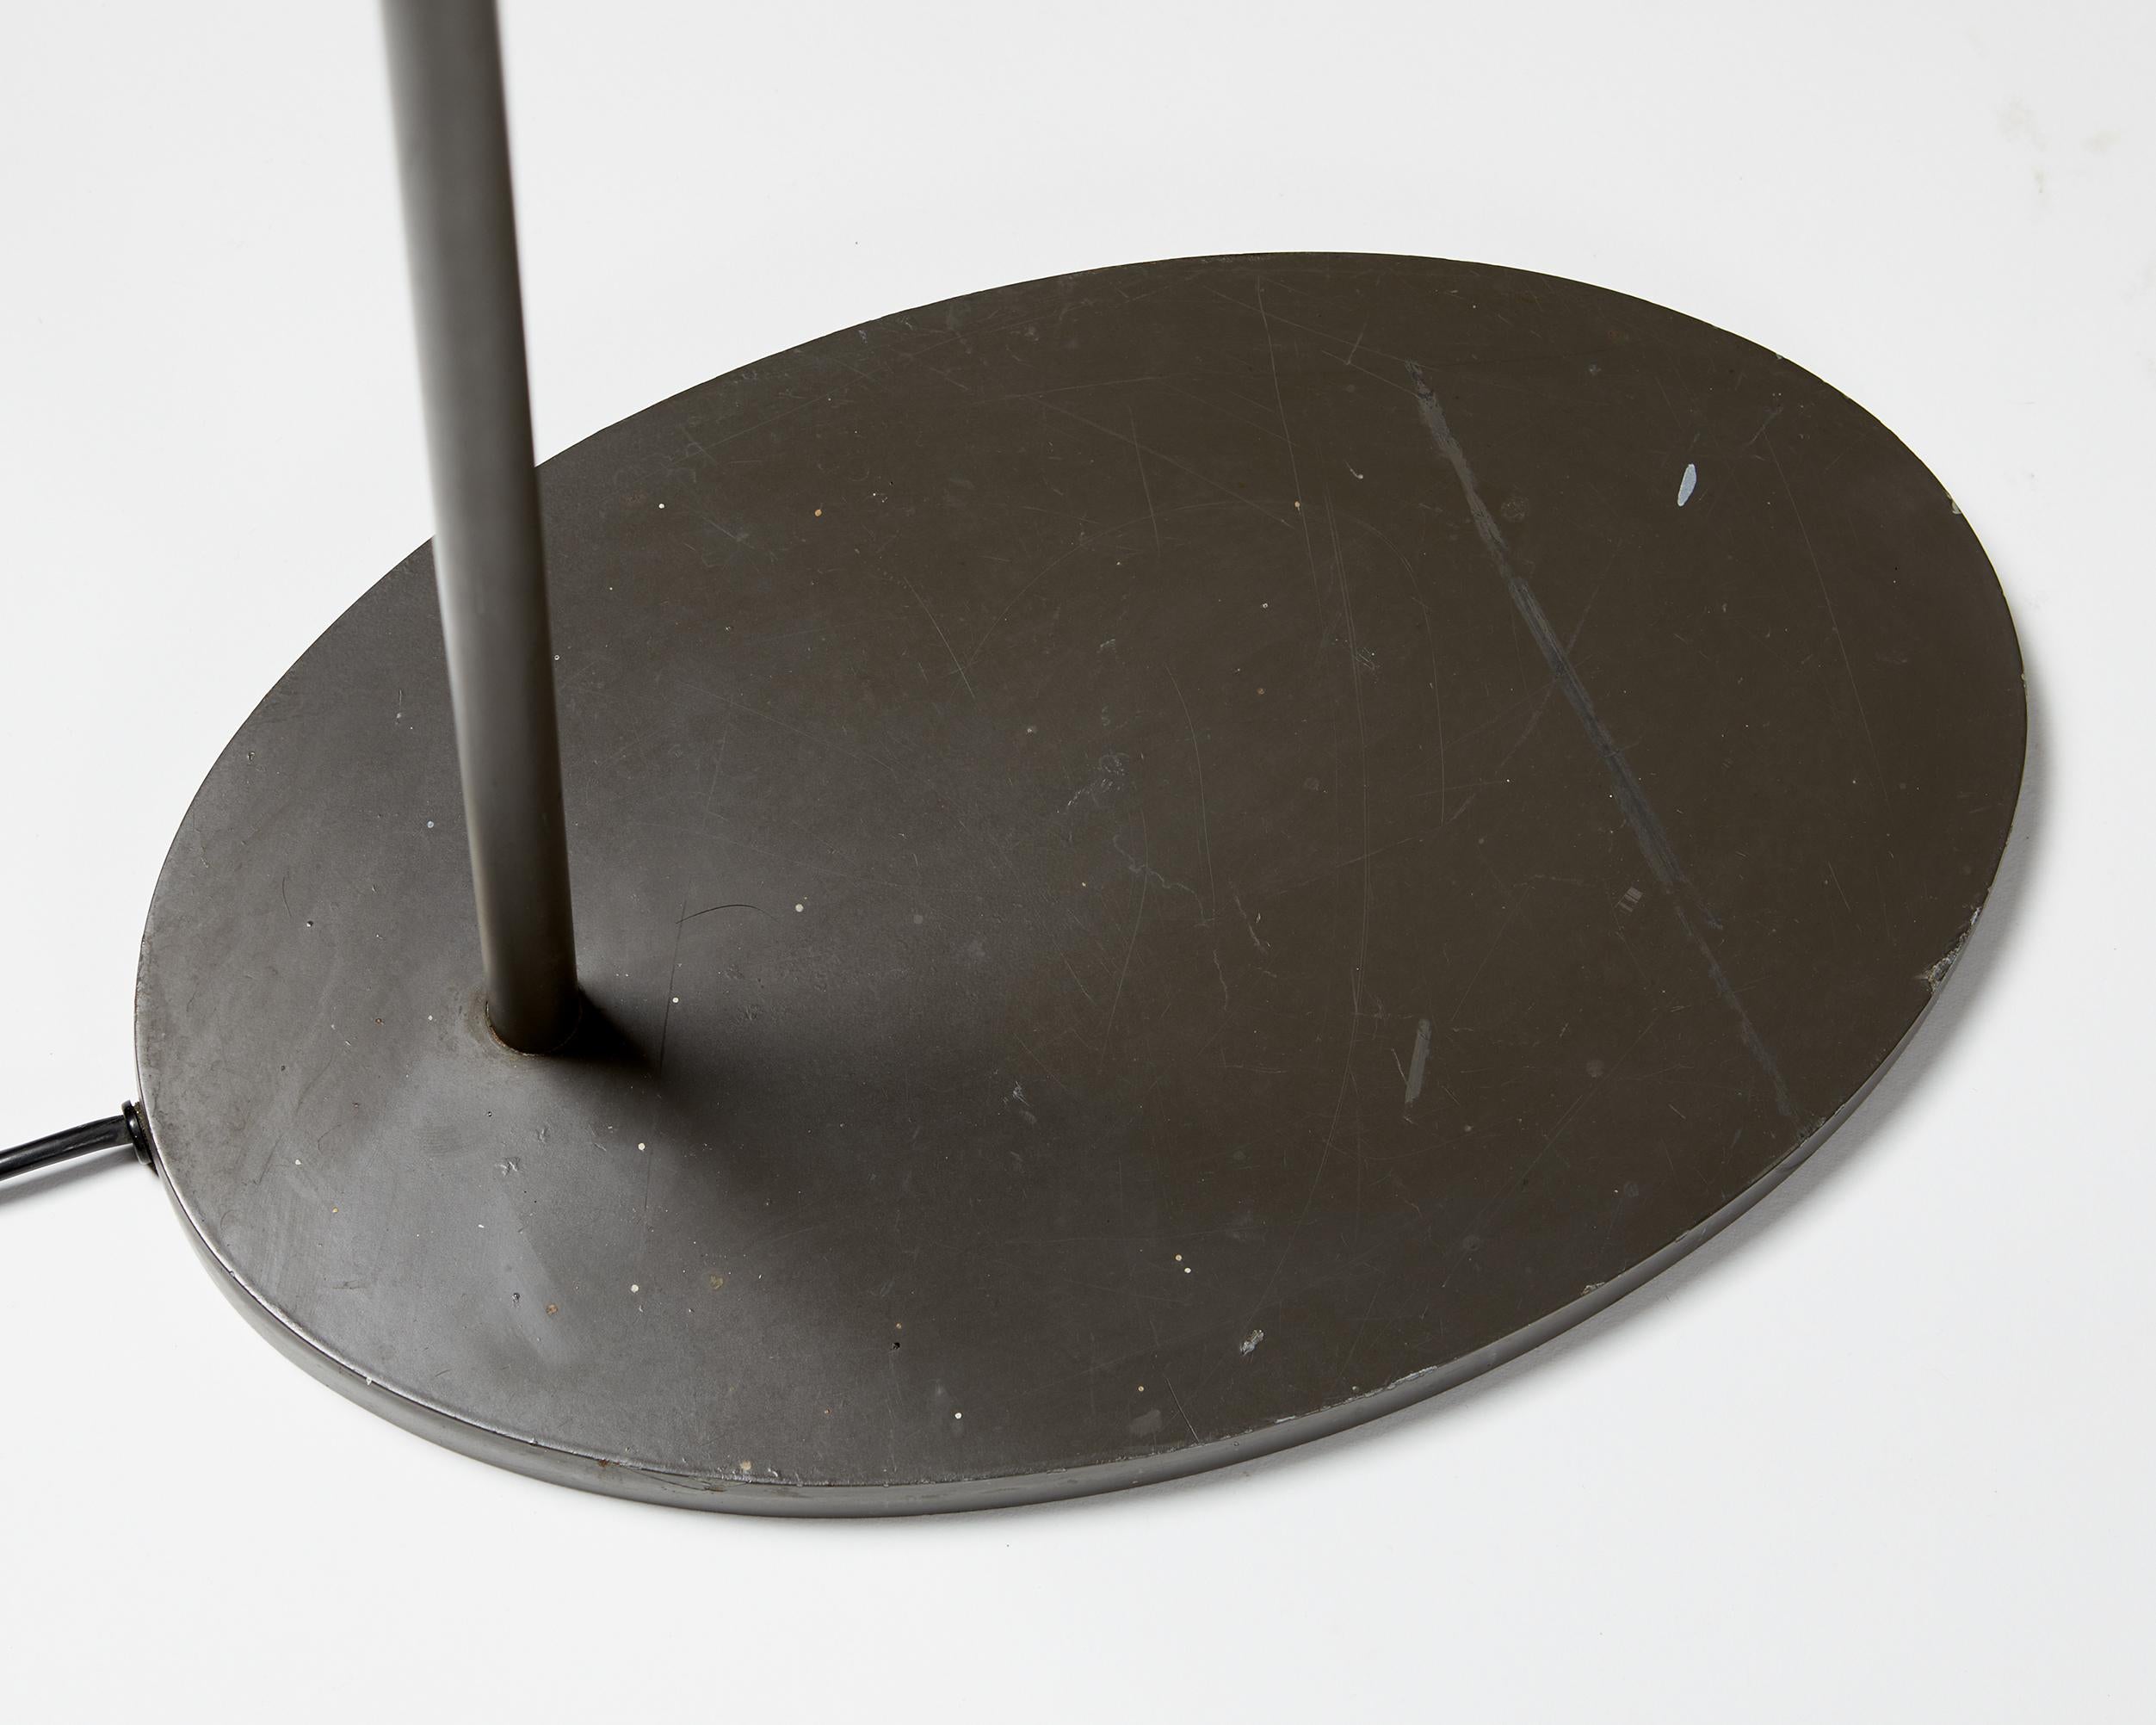 Stainless Steel Floor Lamp Model AJ Royal, Designed by Arne Jacobsen